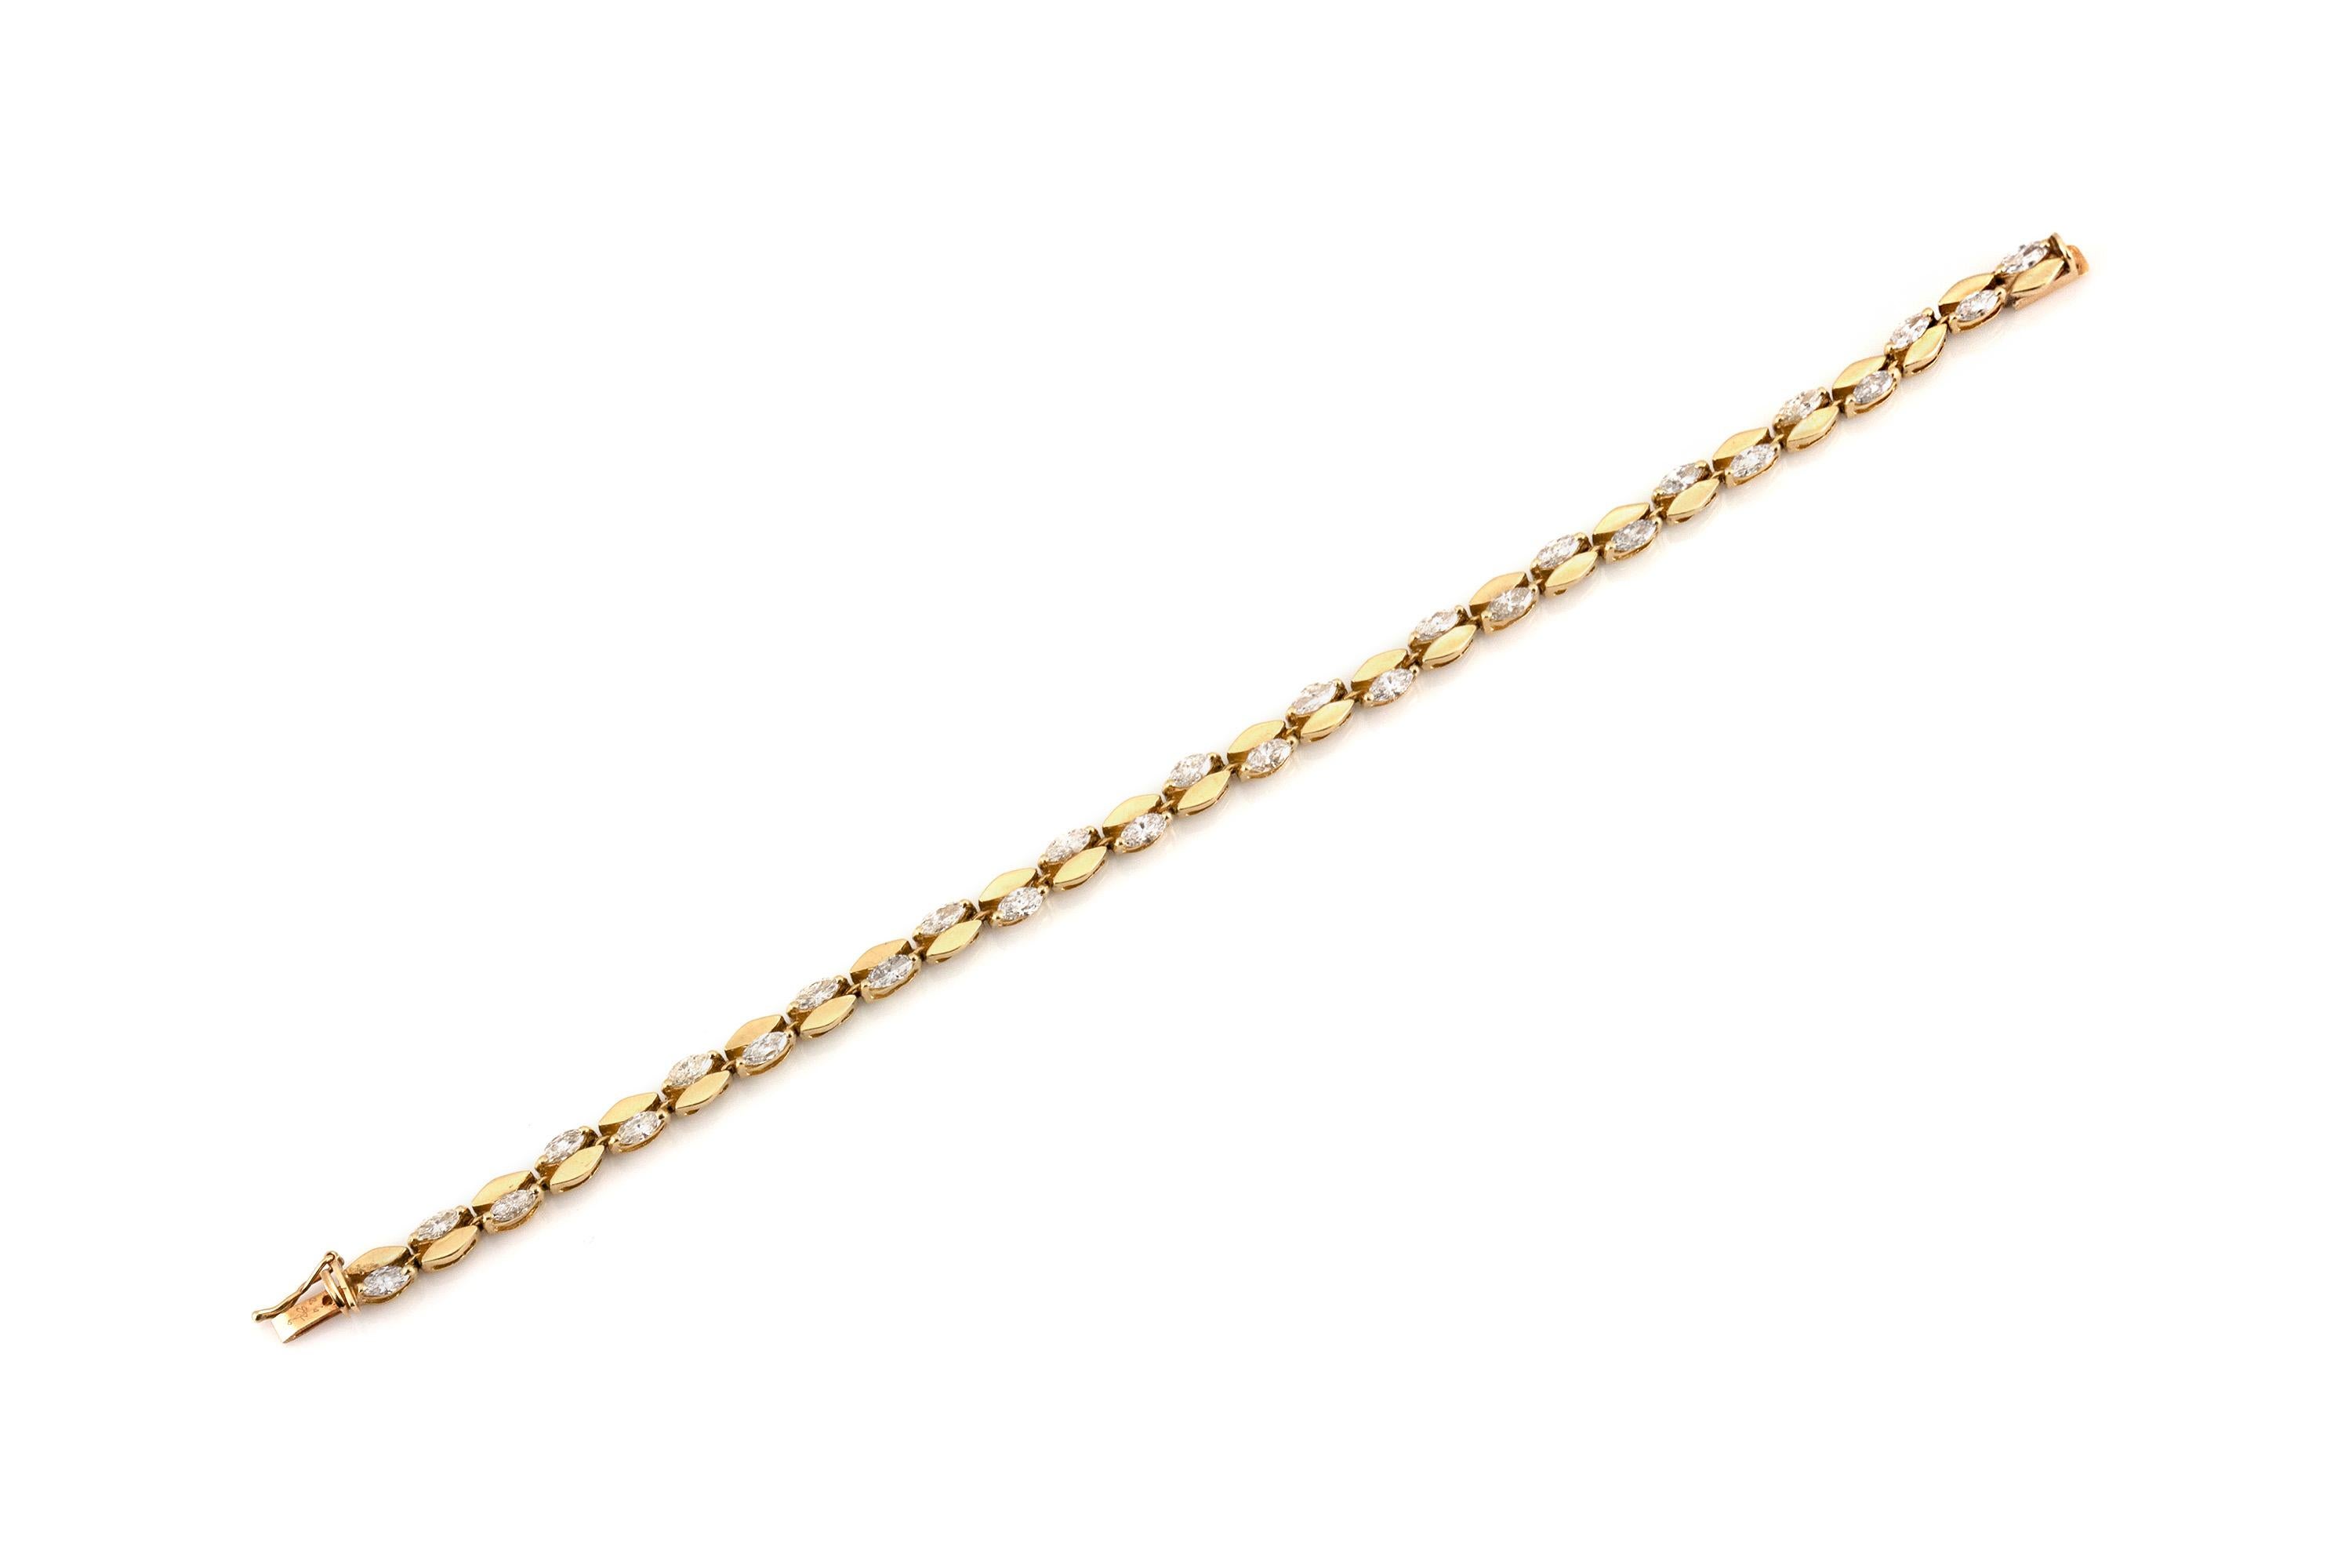 Das Armband ist fein in 14k Gelbgold mit marquise Diamanten mit einem Gesamtgewicht von etwa 4,00 Karat gefertigt.
Um 1980.